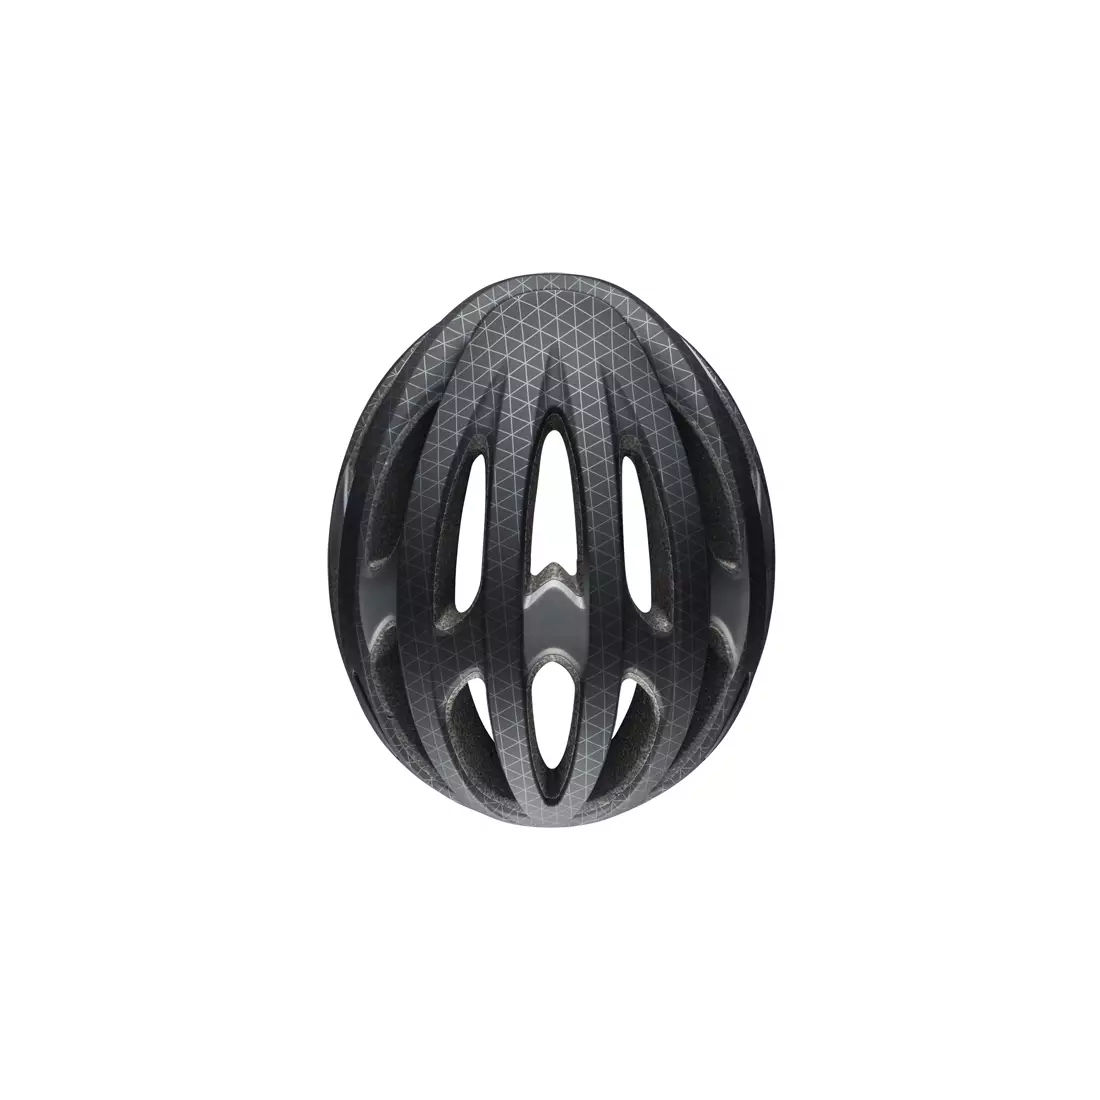 BELL FORMULA MIPS BEL-7088527 matte black gunmetal bicycle helmet